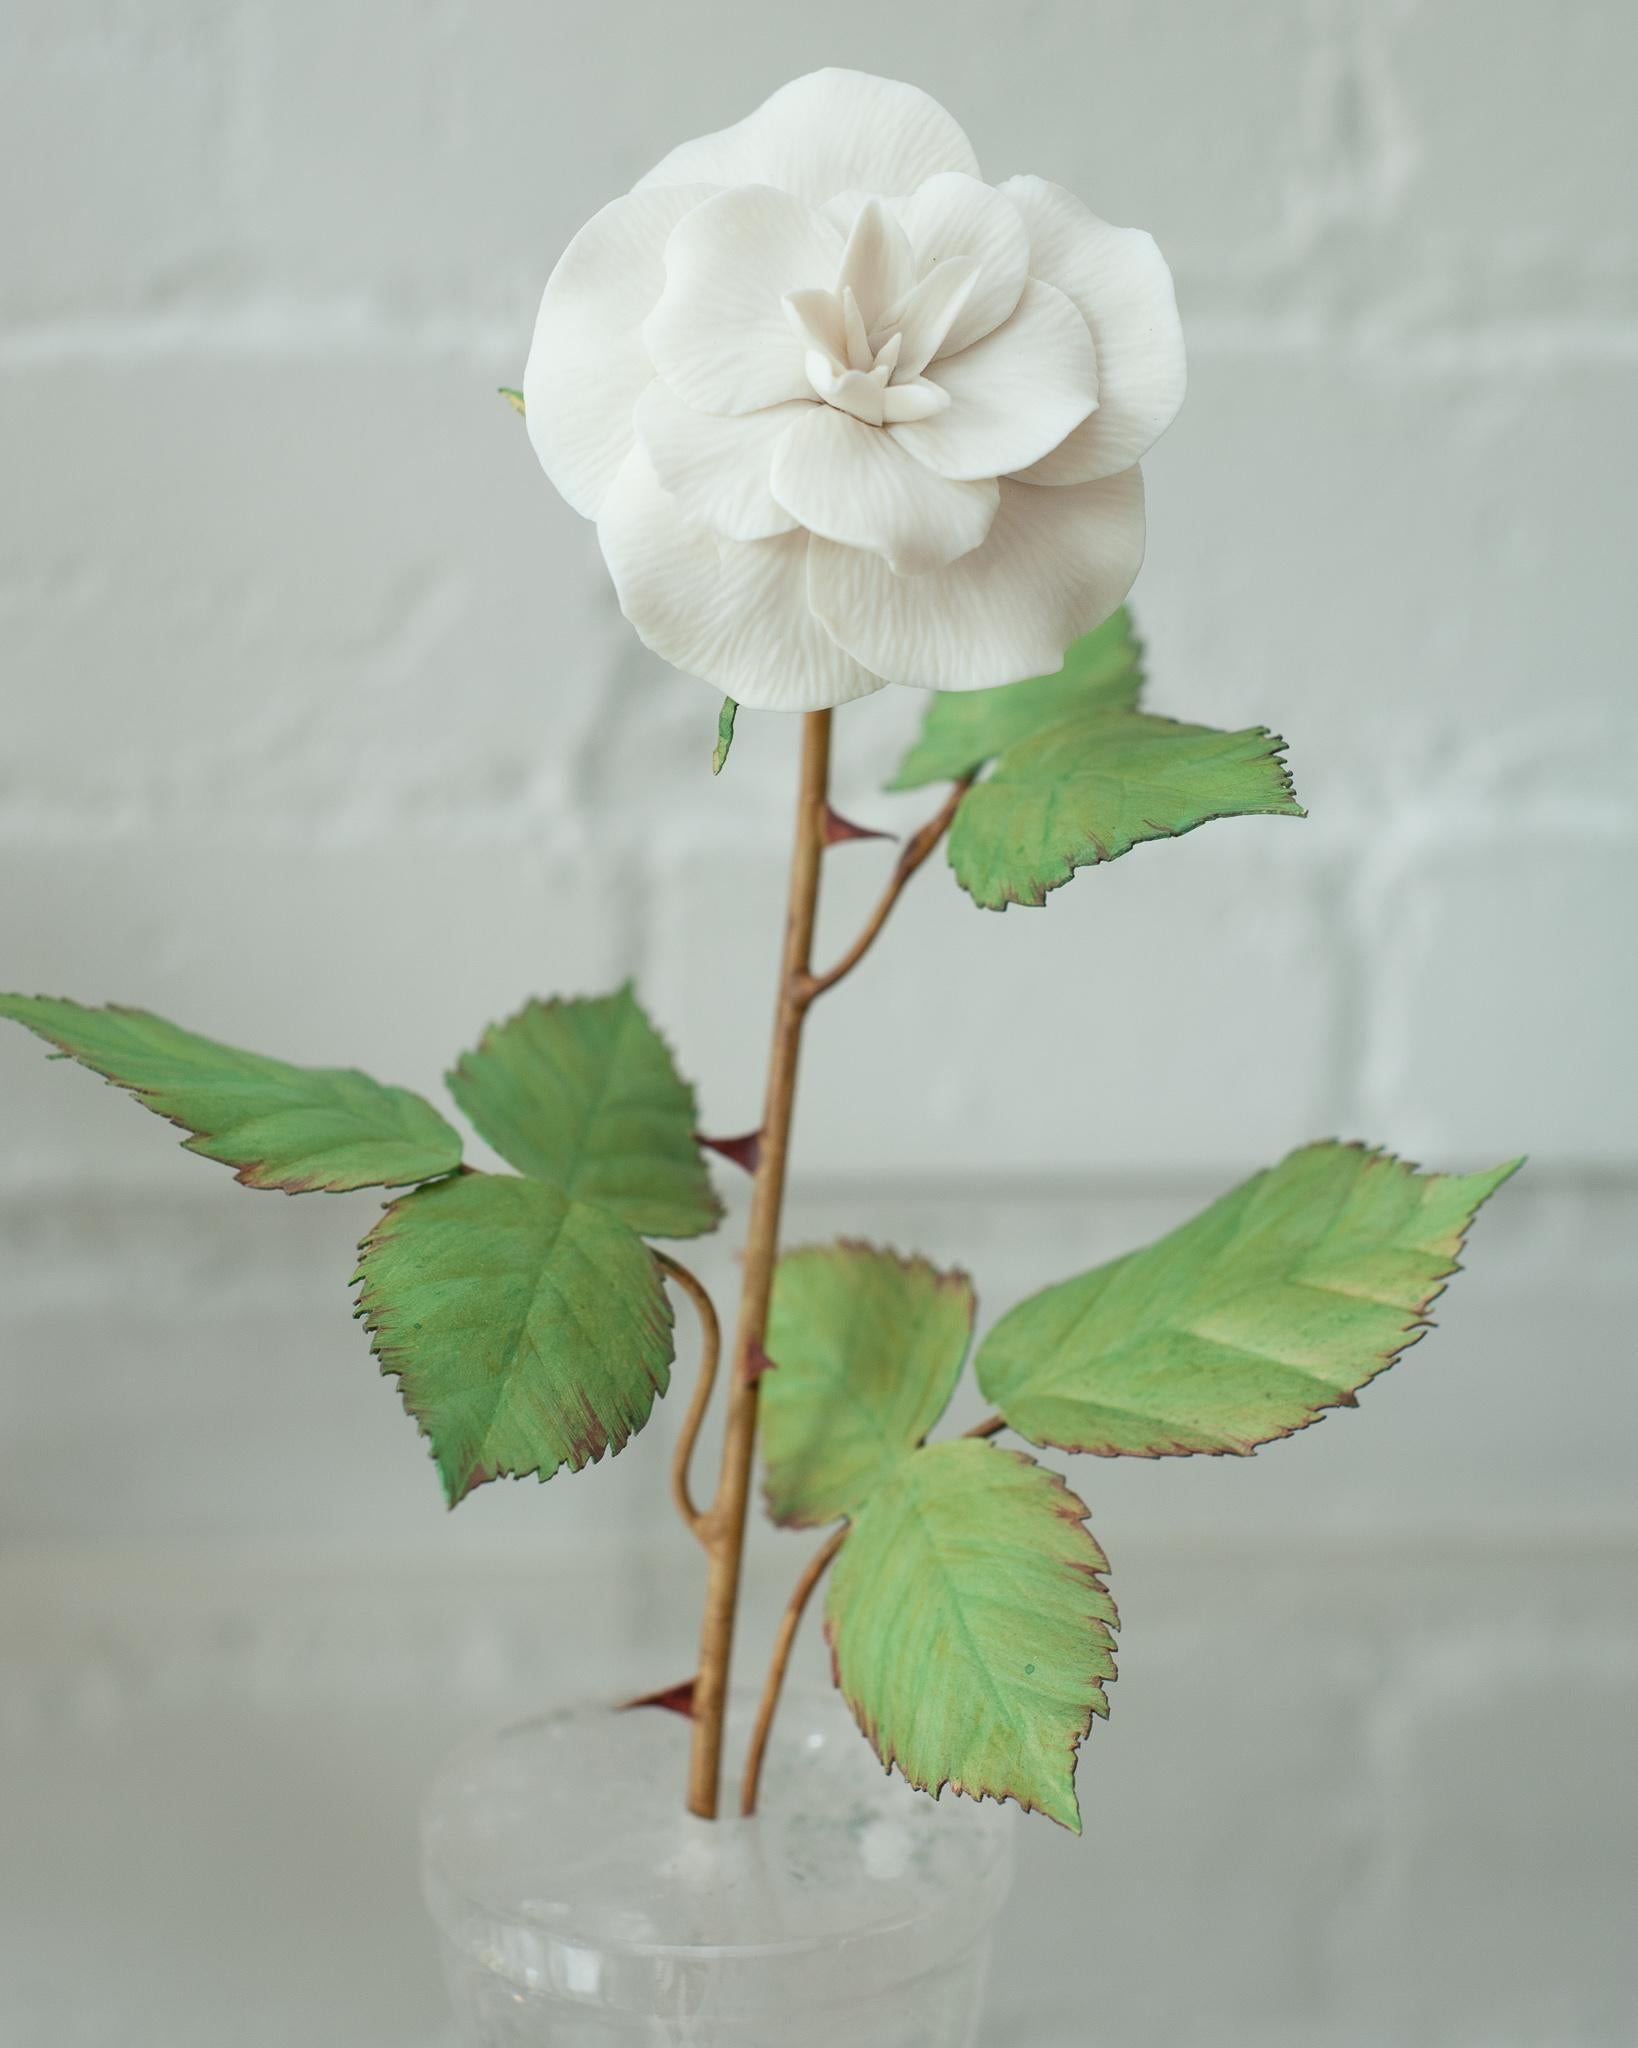 Agrémentez votre table de ces délicates fleurs en porcelaine de l'artiste français Samuel Mazy. Ce rosier est fabriqué à la main en porcelaine biscuit avec des feuilles et des tiges en cuivre peint, et est placé dans un pot en cristal de roche. Une